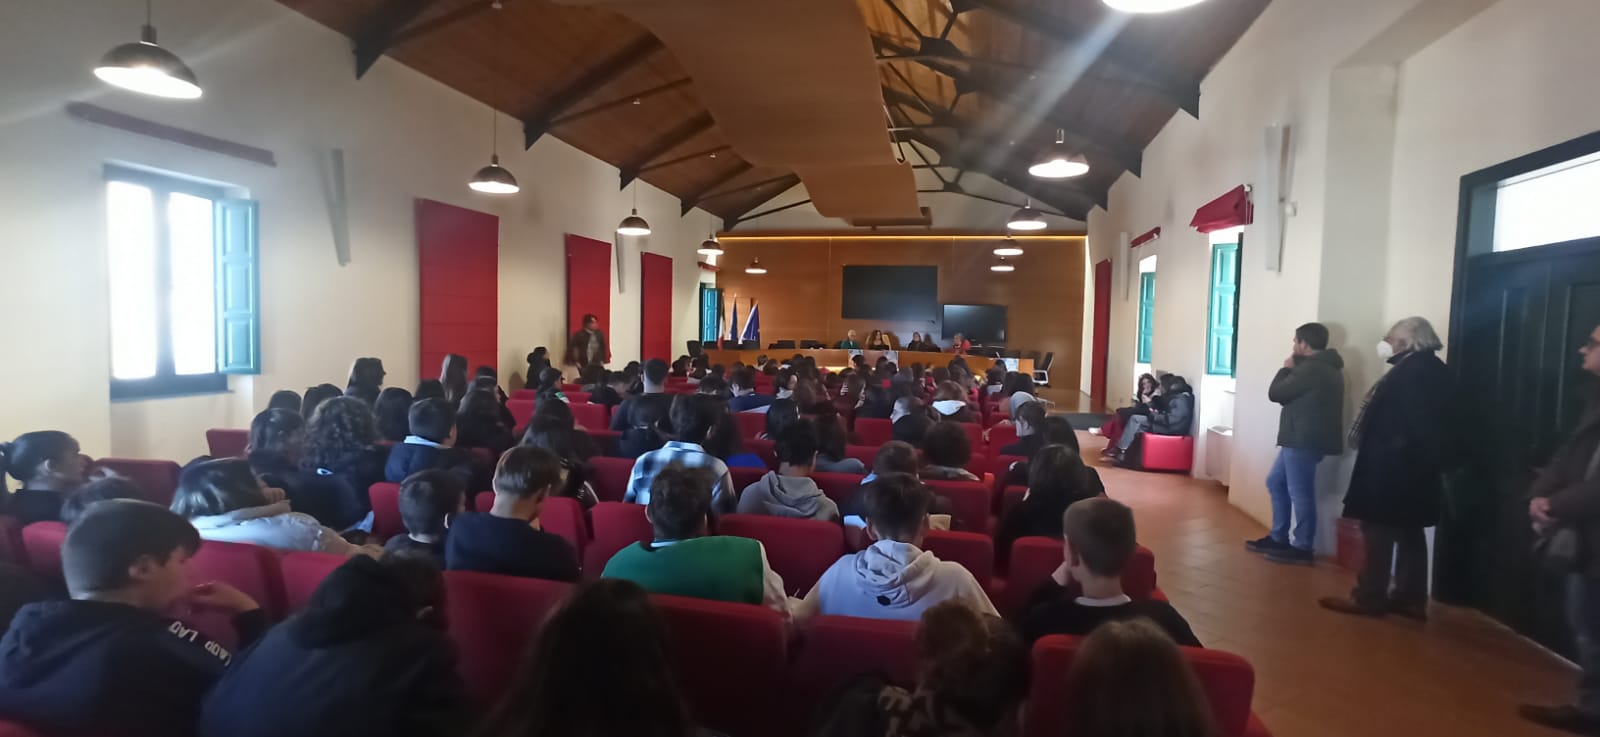 Vallo della Lucania dice «stop al bullismo»: l’incontro con gli studenti